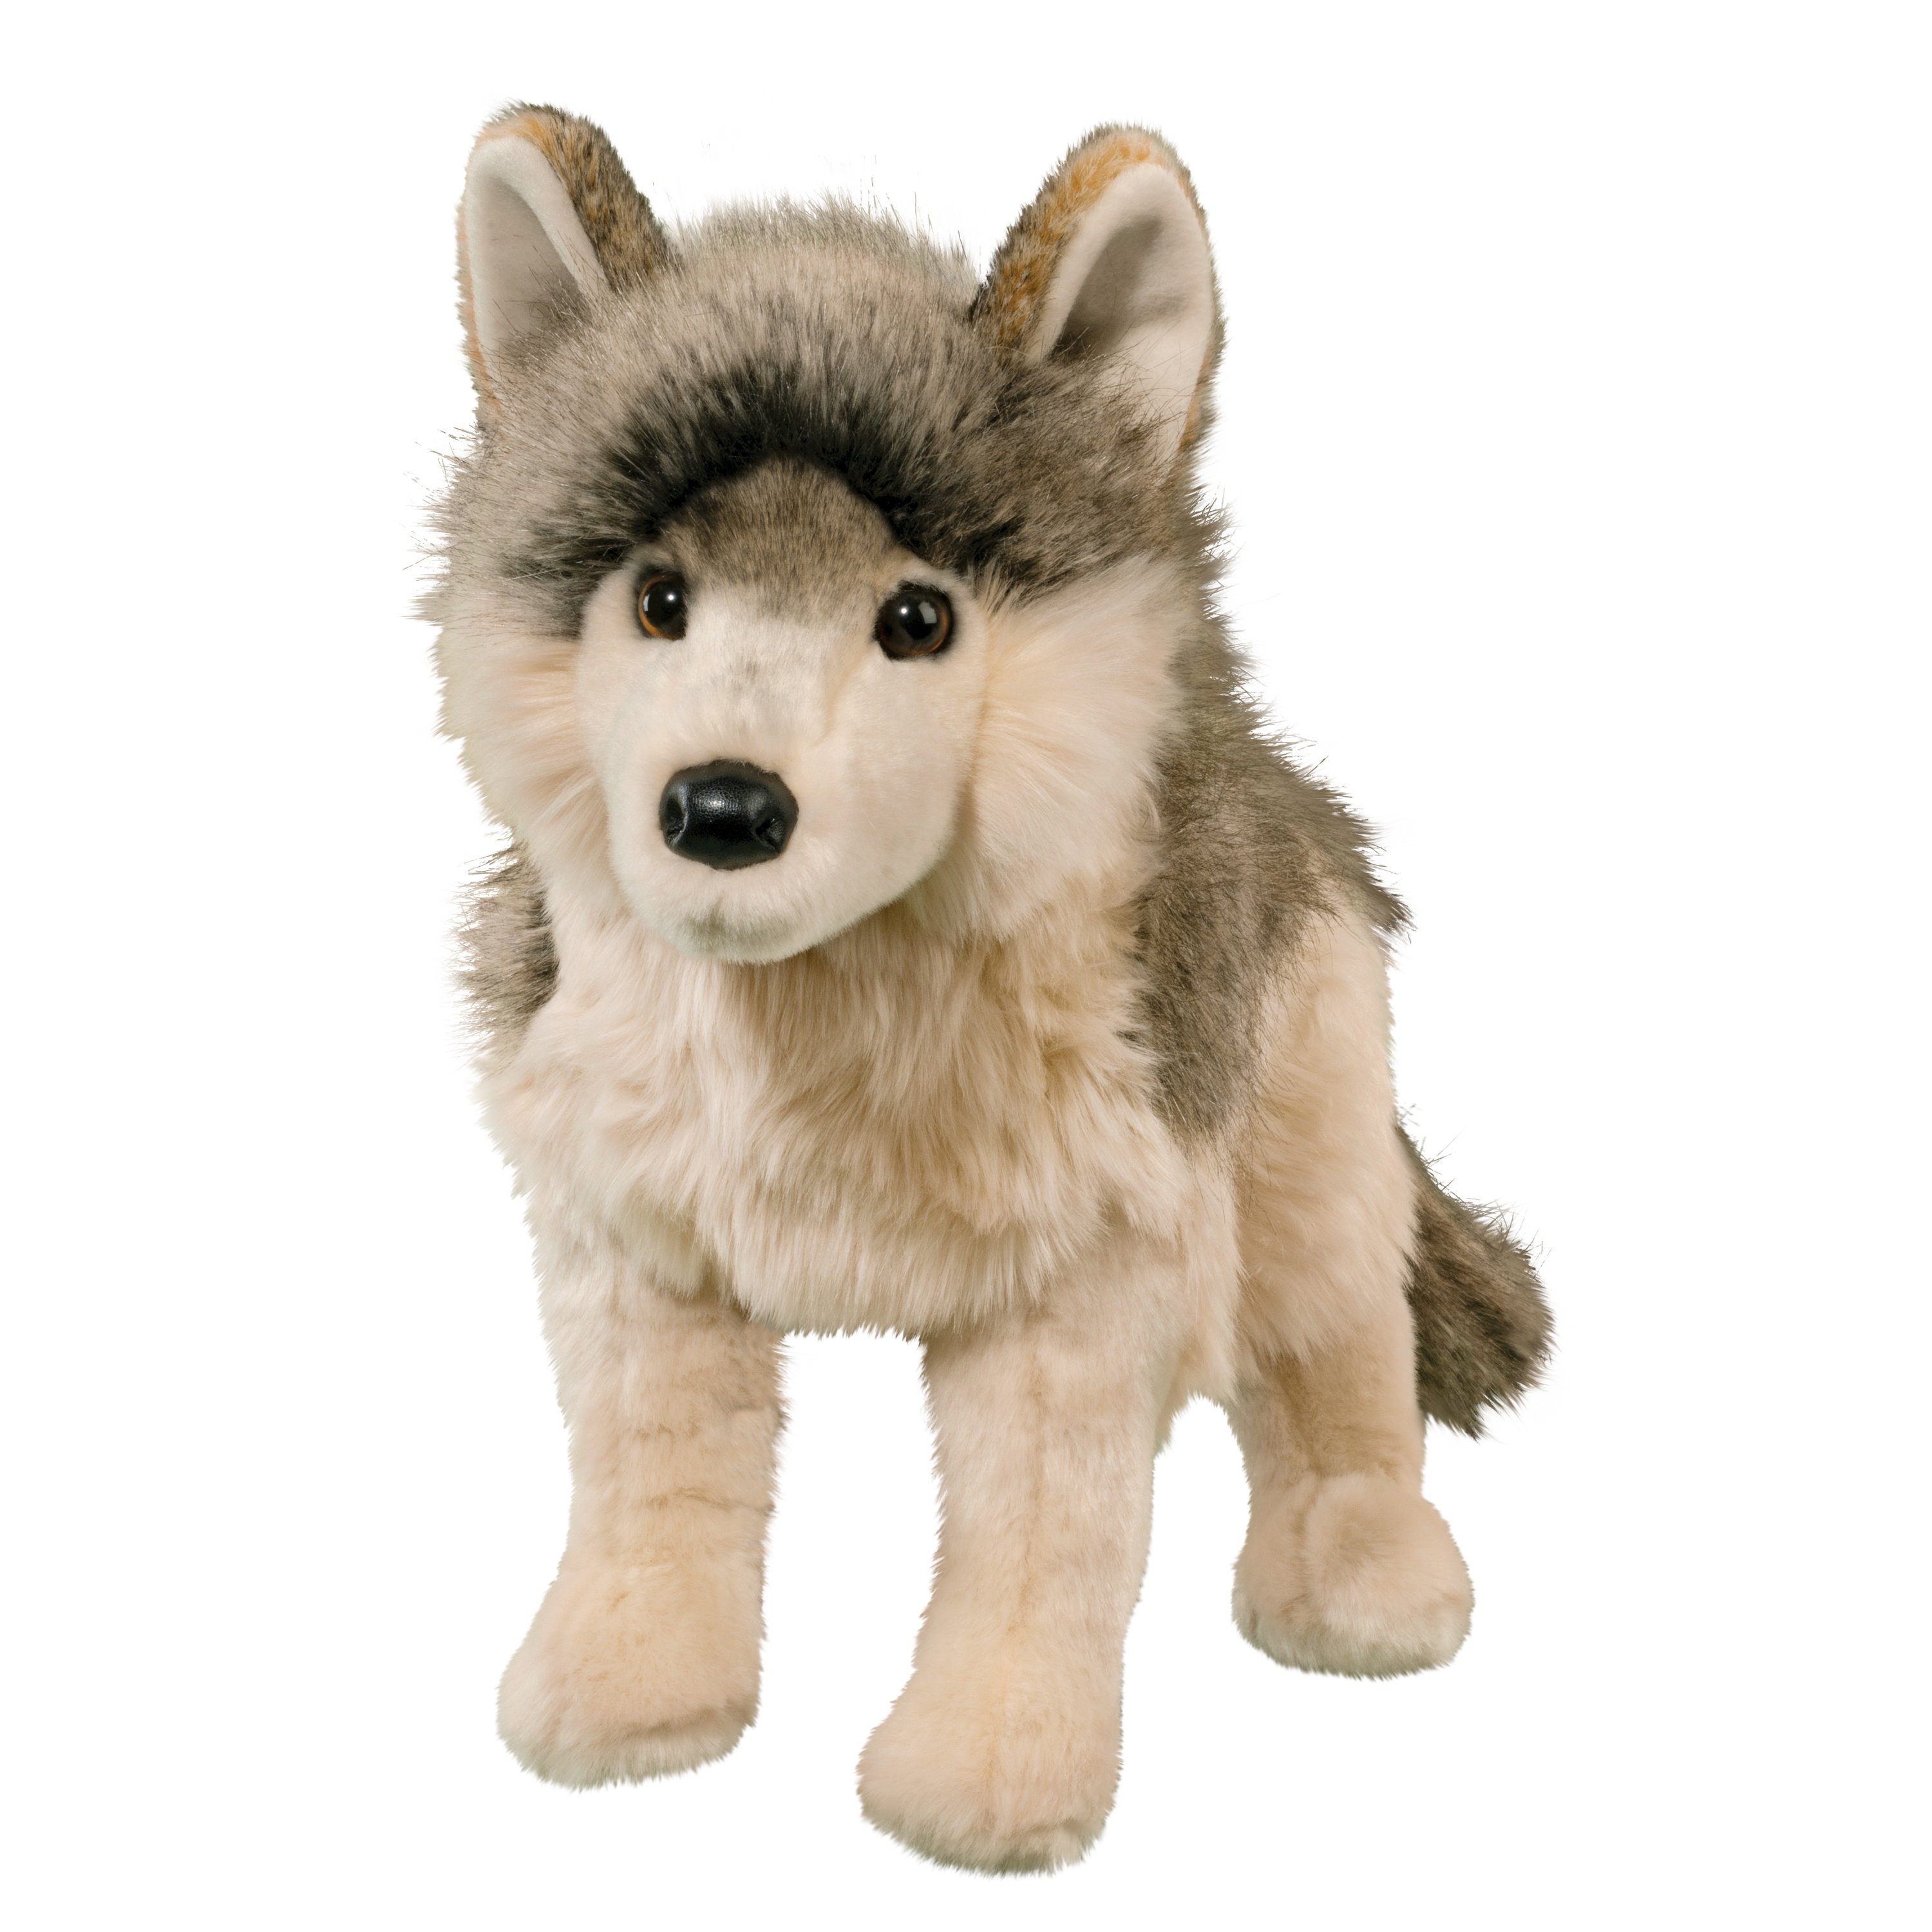 Raina 12" tall Howling Wolf plush stuffed animal by Douglas Cuddle Toy 